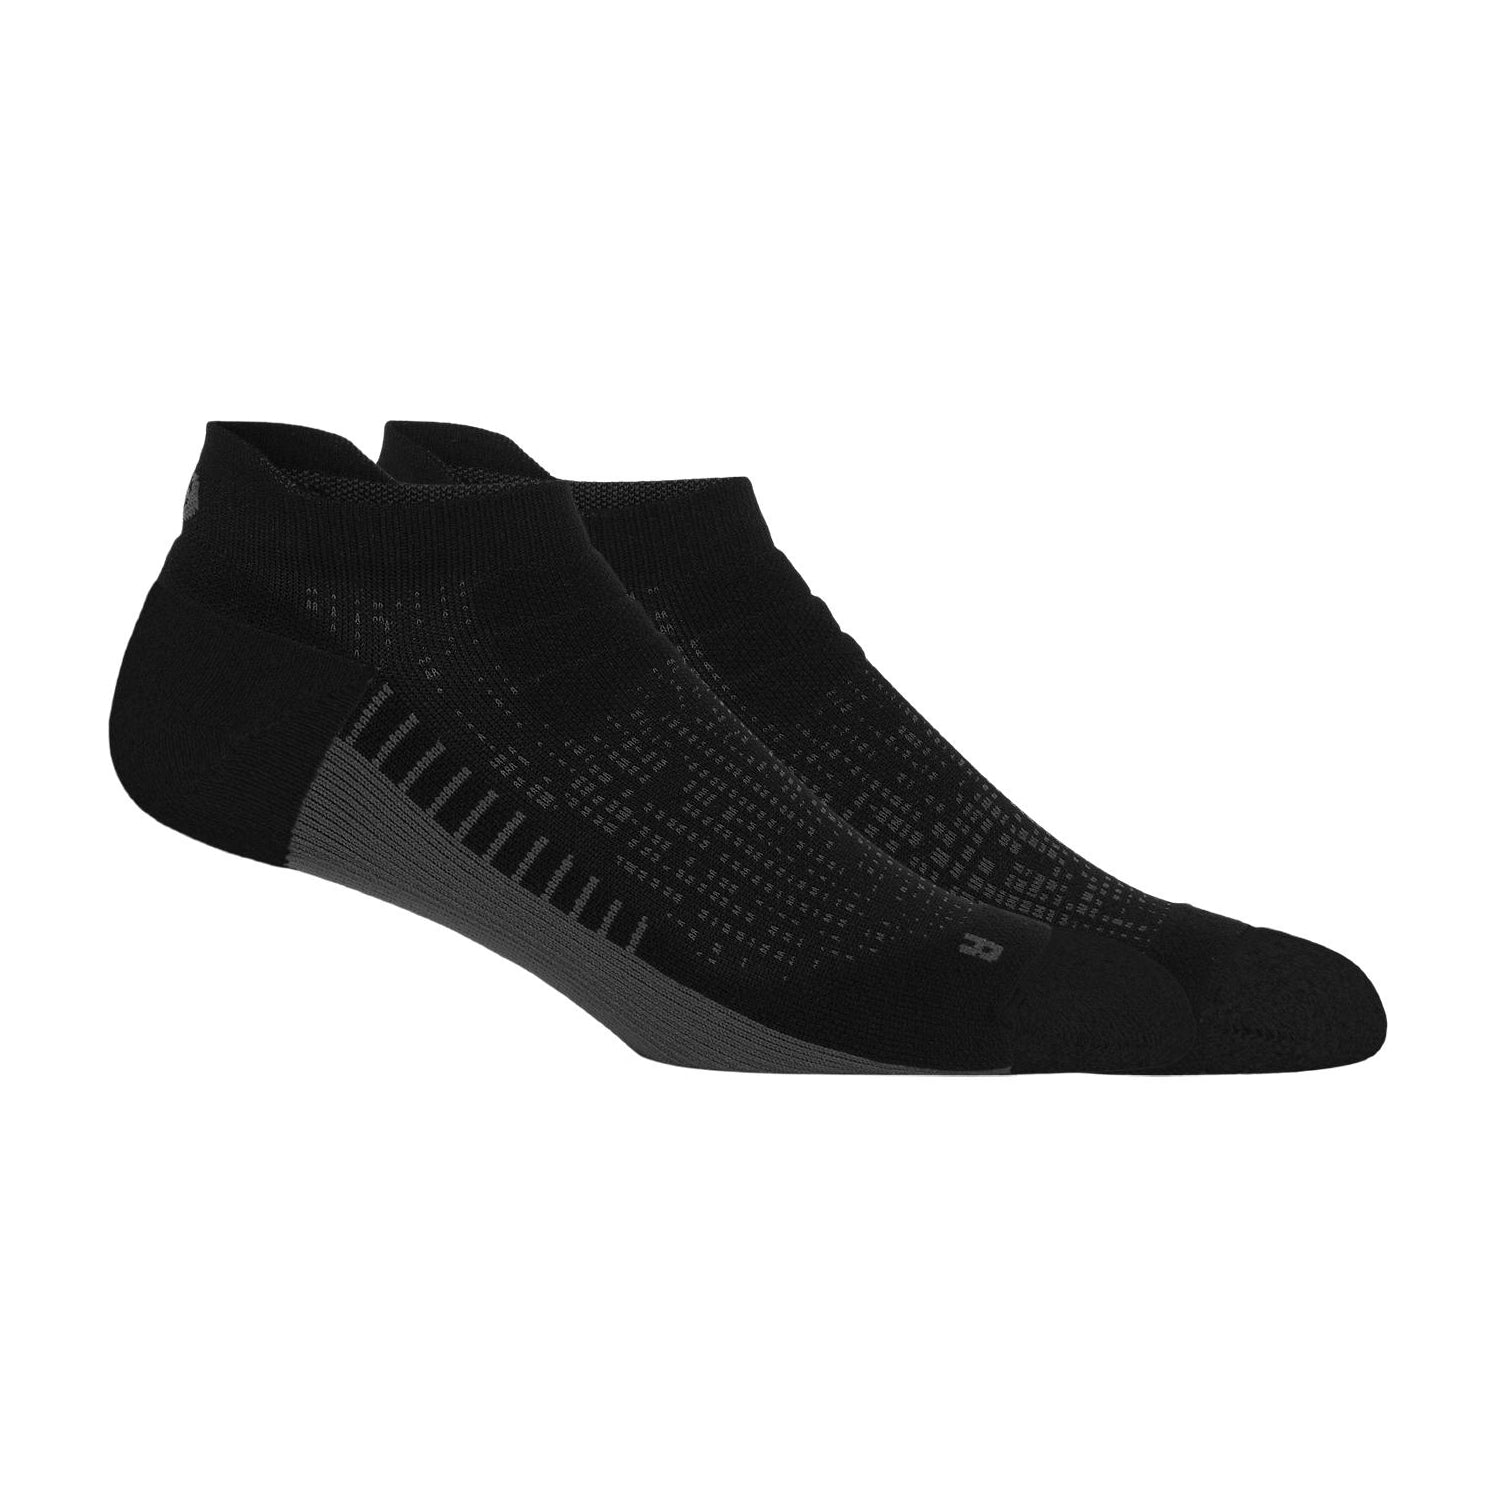 Perfor Ankle Sock Performance Black | Unisex